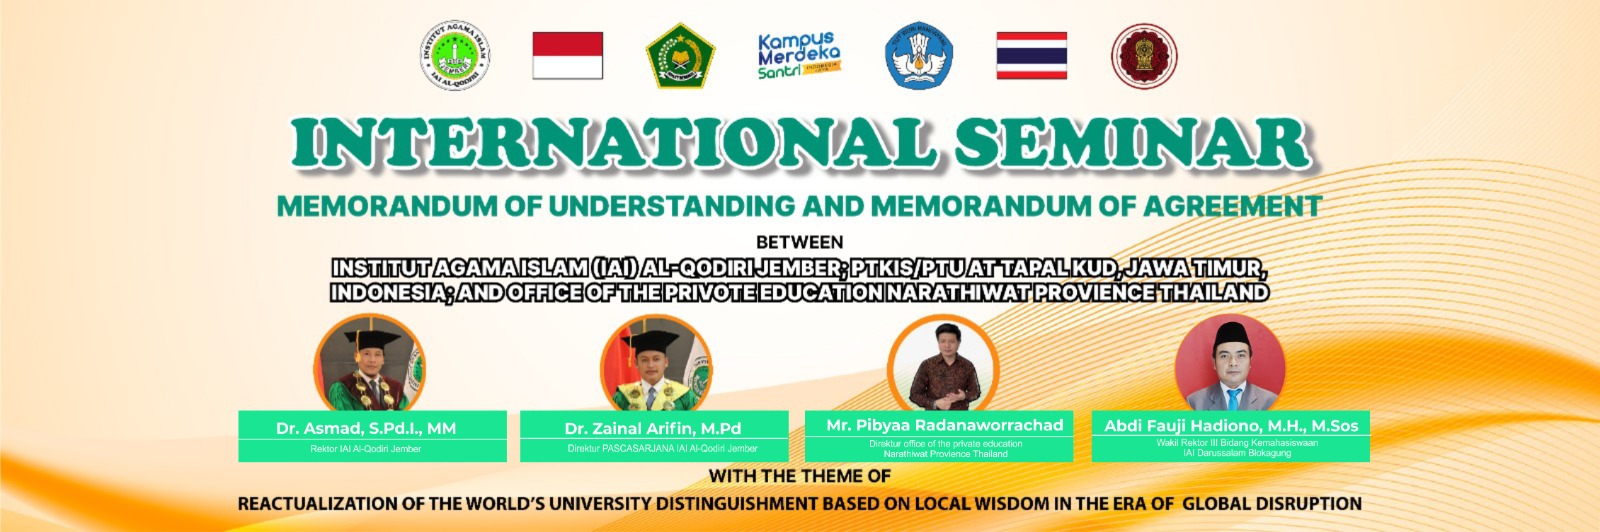 International Seminar, Memorandum Of Understanding and Memorandum Of Eggrement